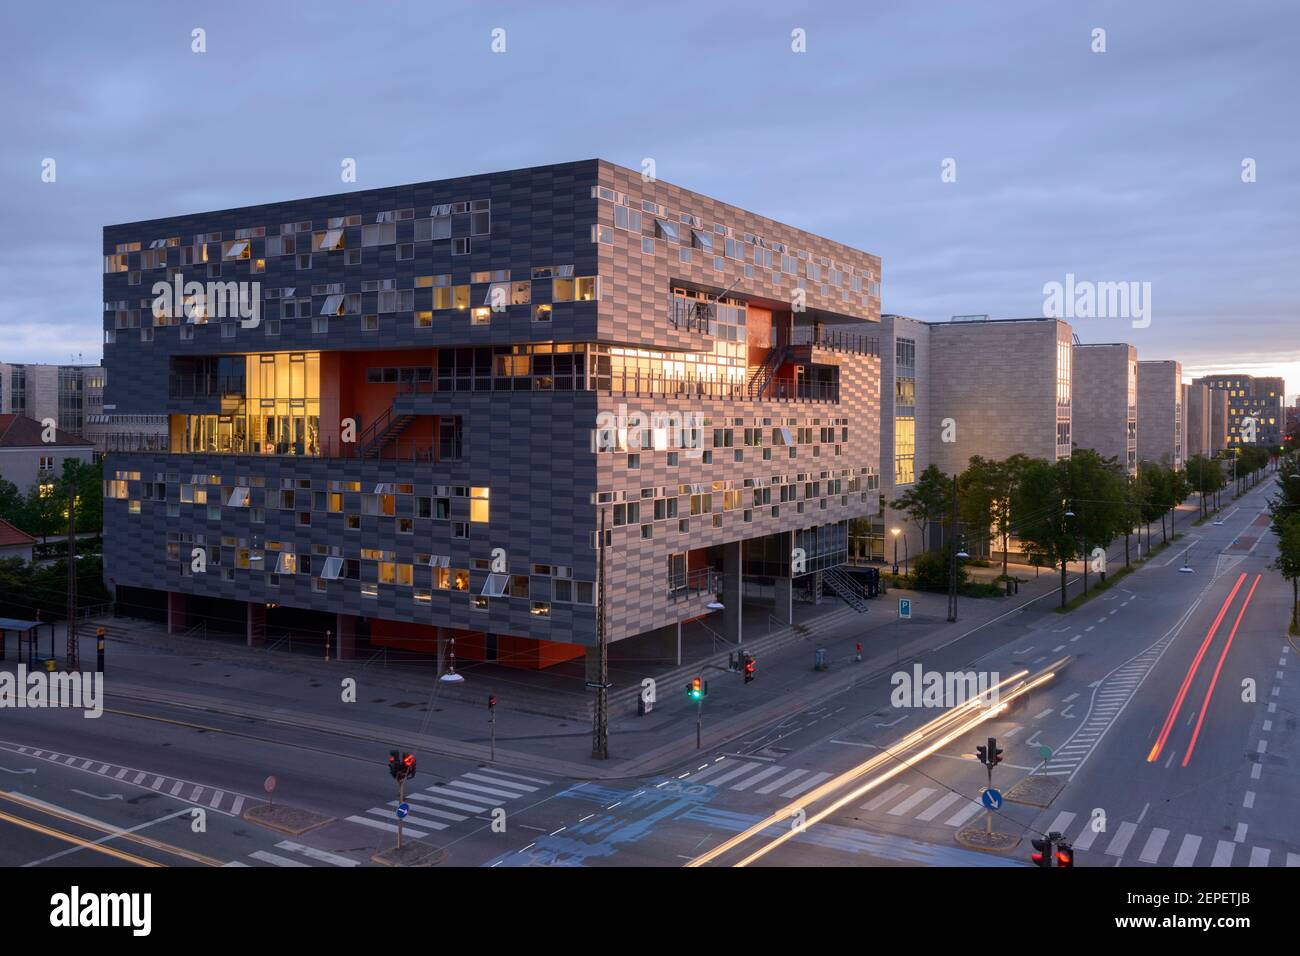 Campus sud de l'Université de Copenhague et dortoir Bikuben Kollegiet à Copenhague, Danemark. Banque D'Images